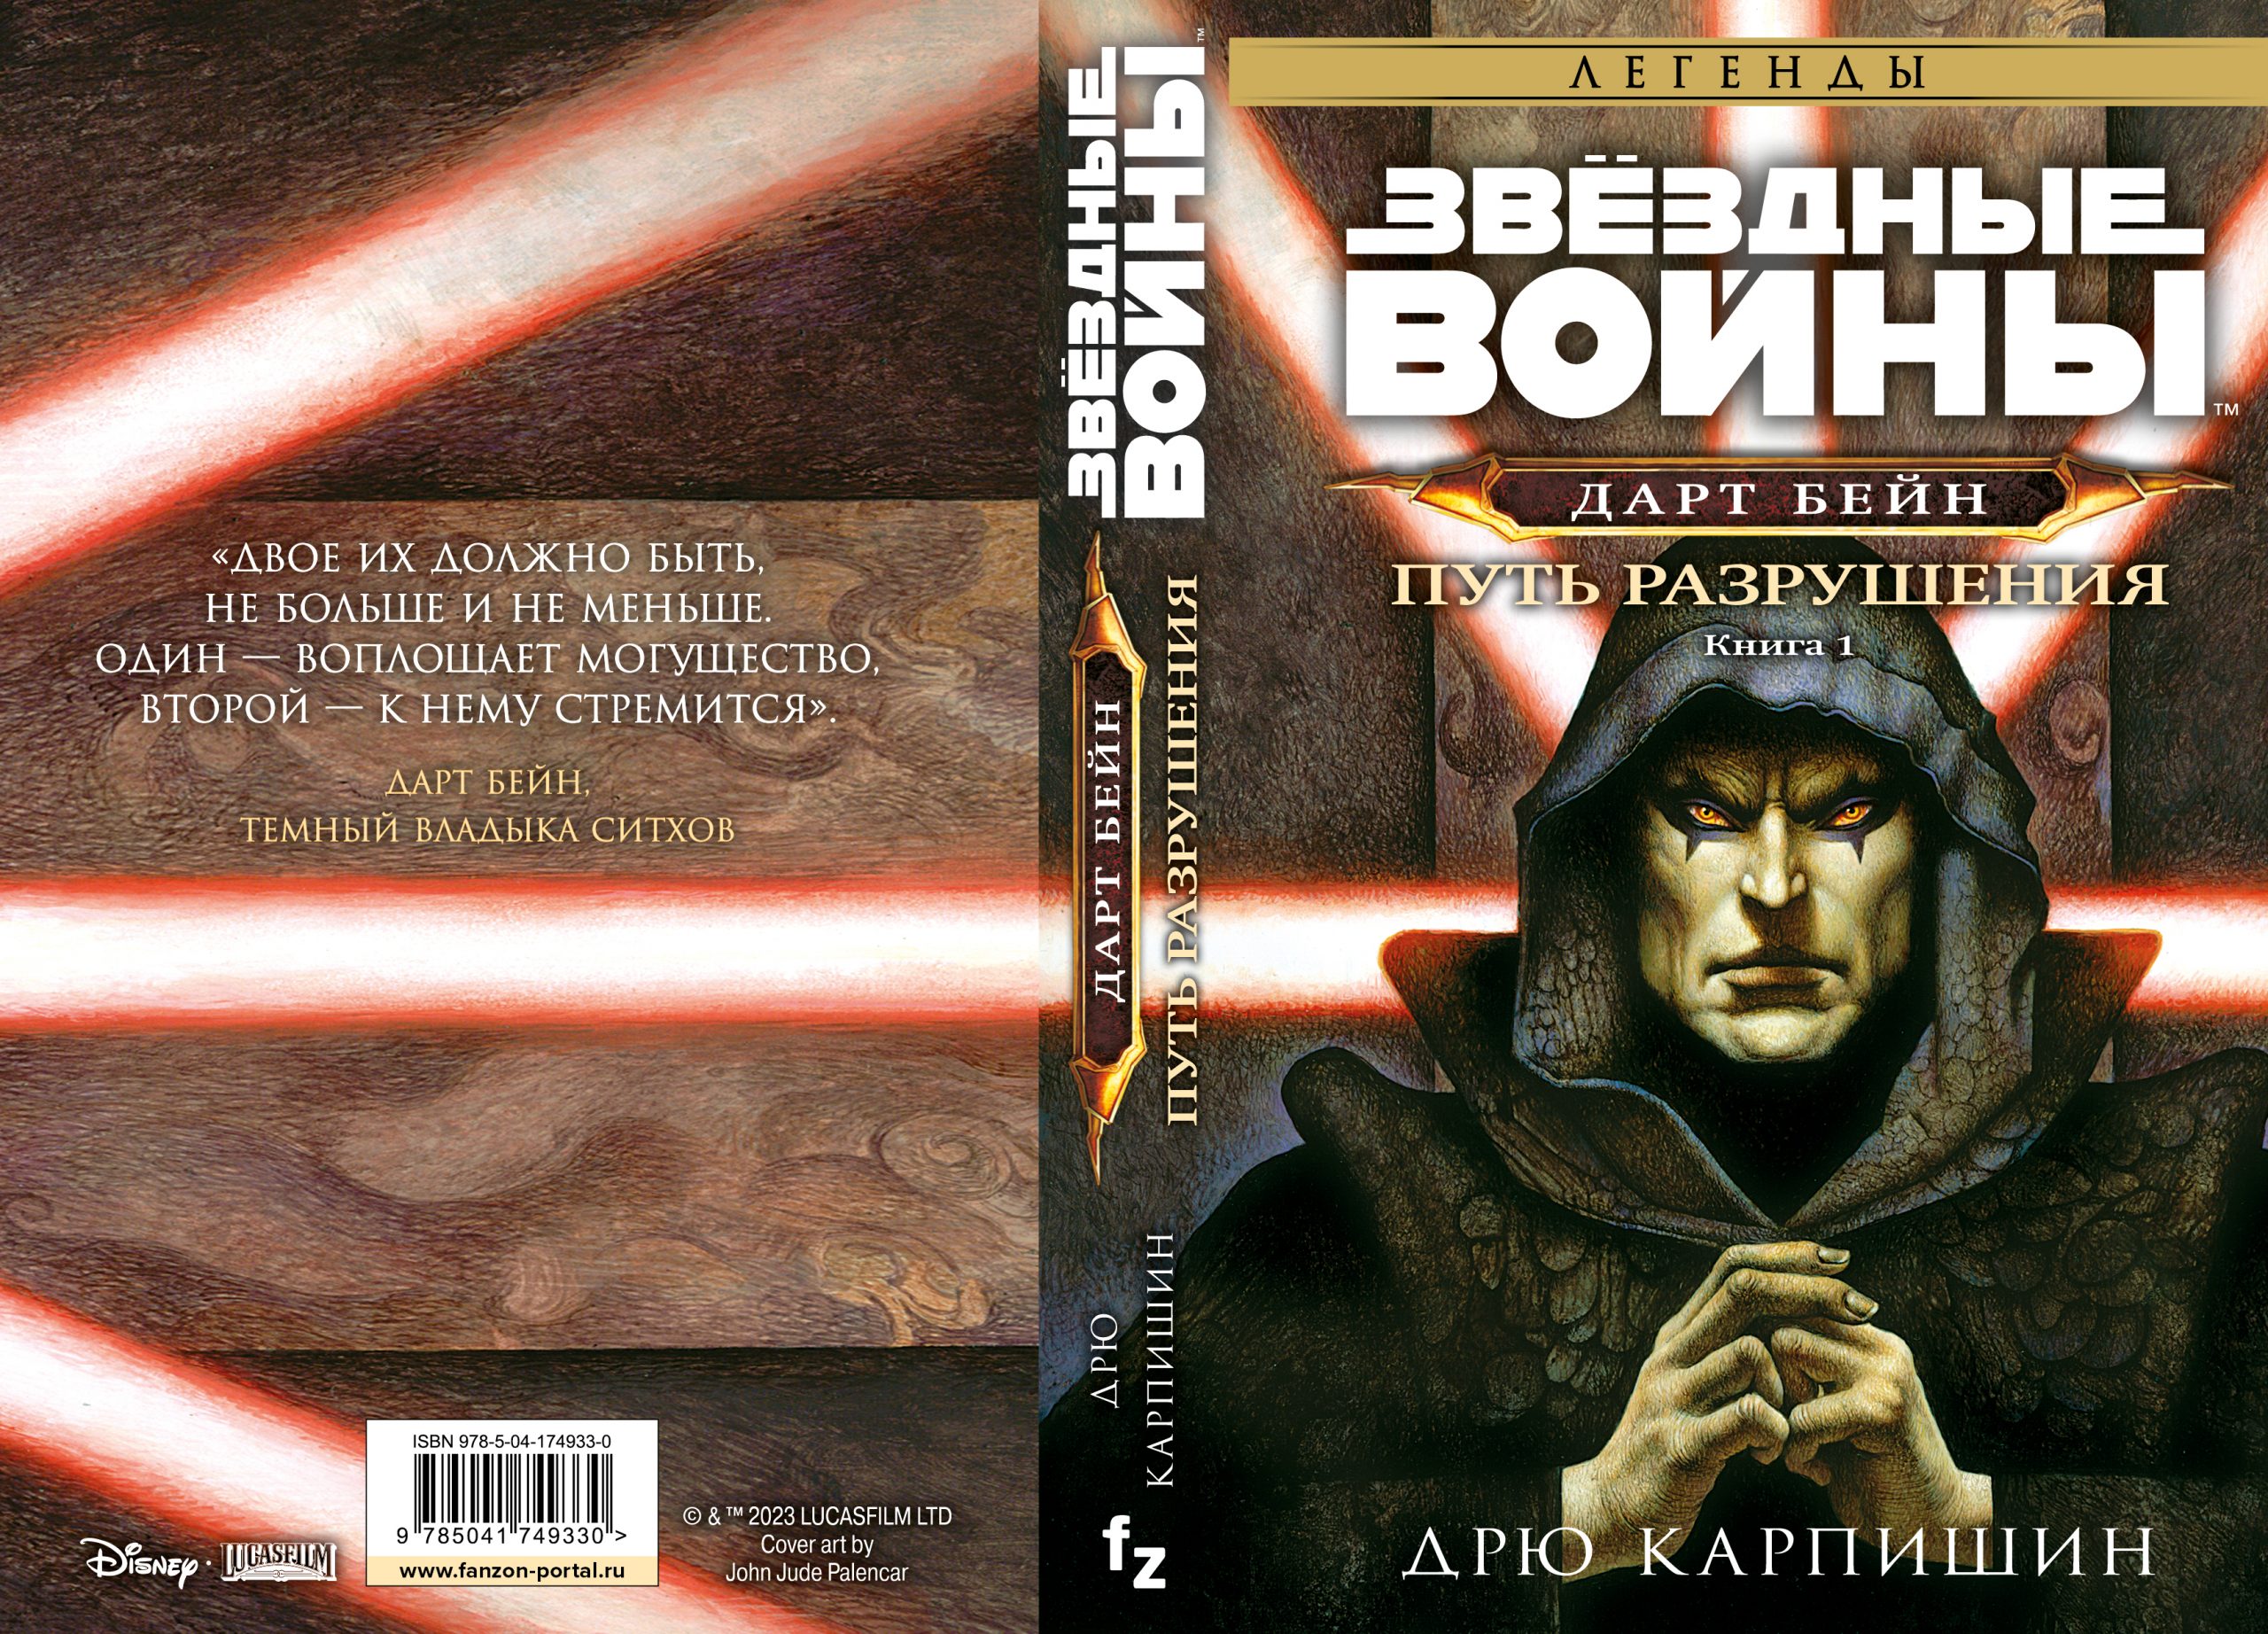 На русском переиздадут трилогию про Дарта Бейна из «Звёздных войн» — одну из самых известных книг «Легенд» 1